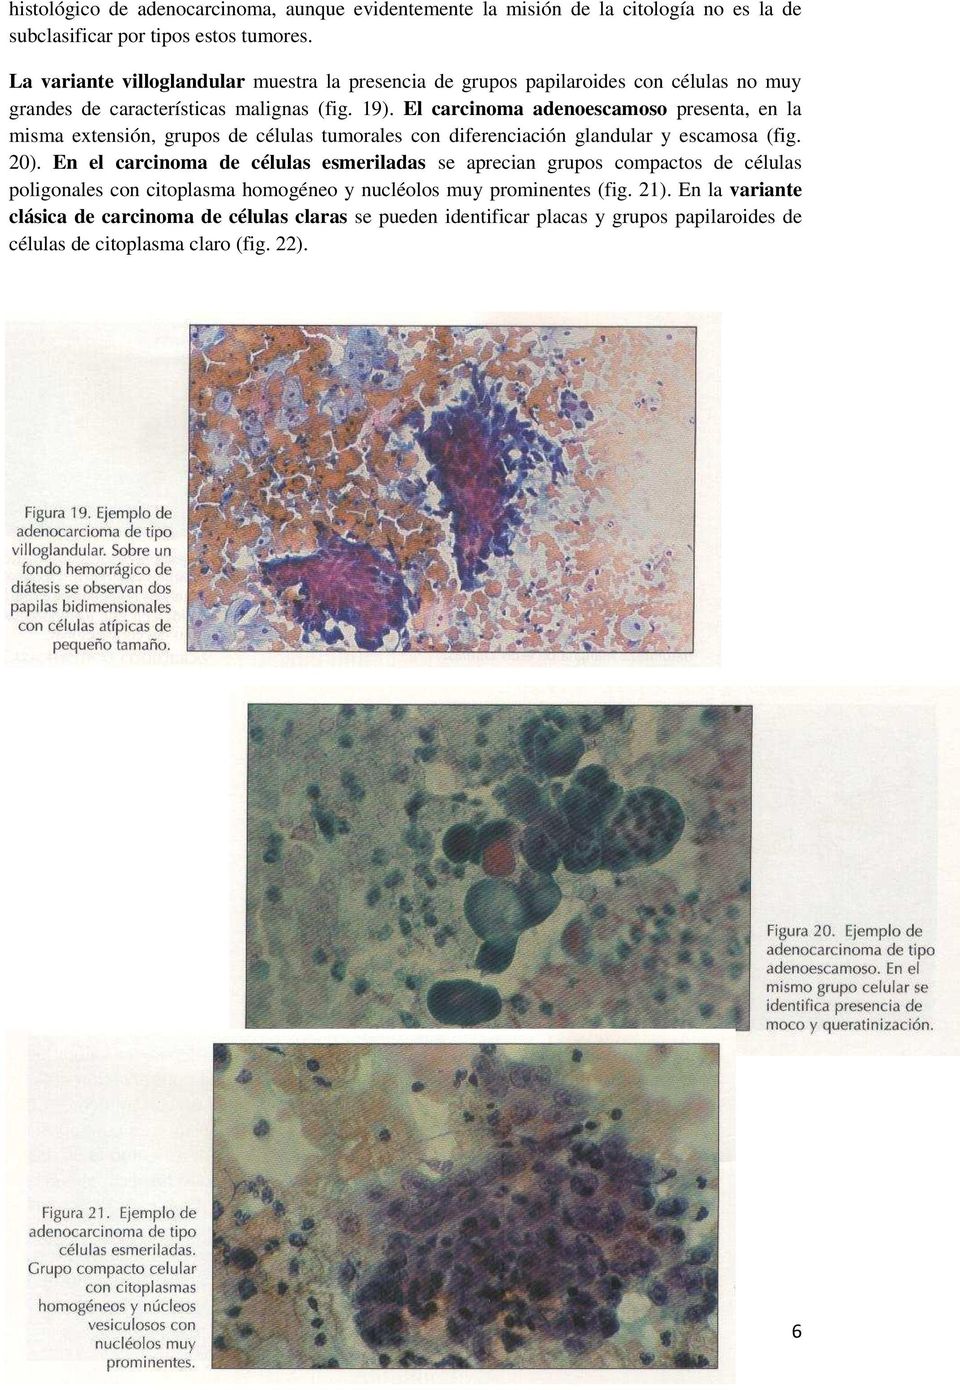 El carcinoma adenoescamoso presenta, en la misma extensión, grupos de células tumorales con diferenciación glandular y escamosa (fig. 20).